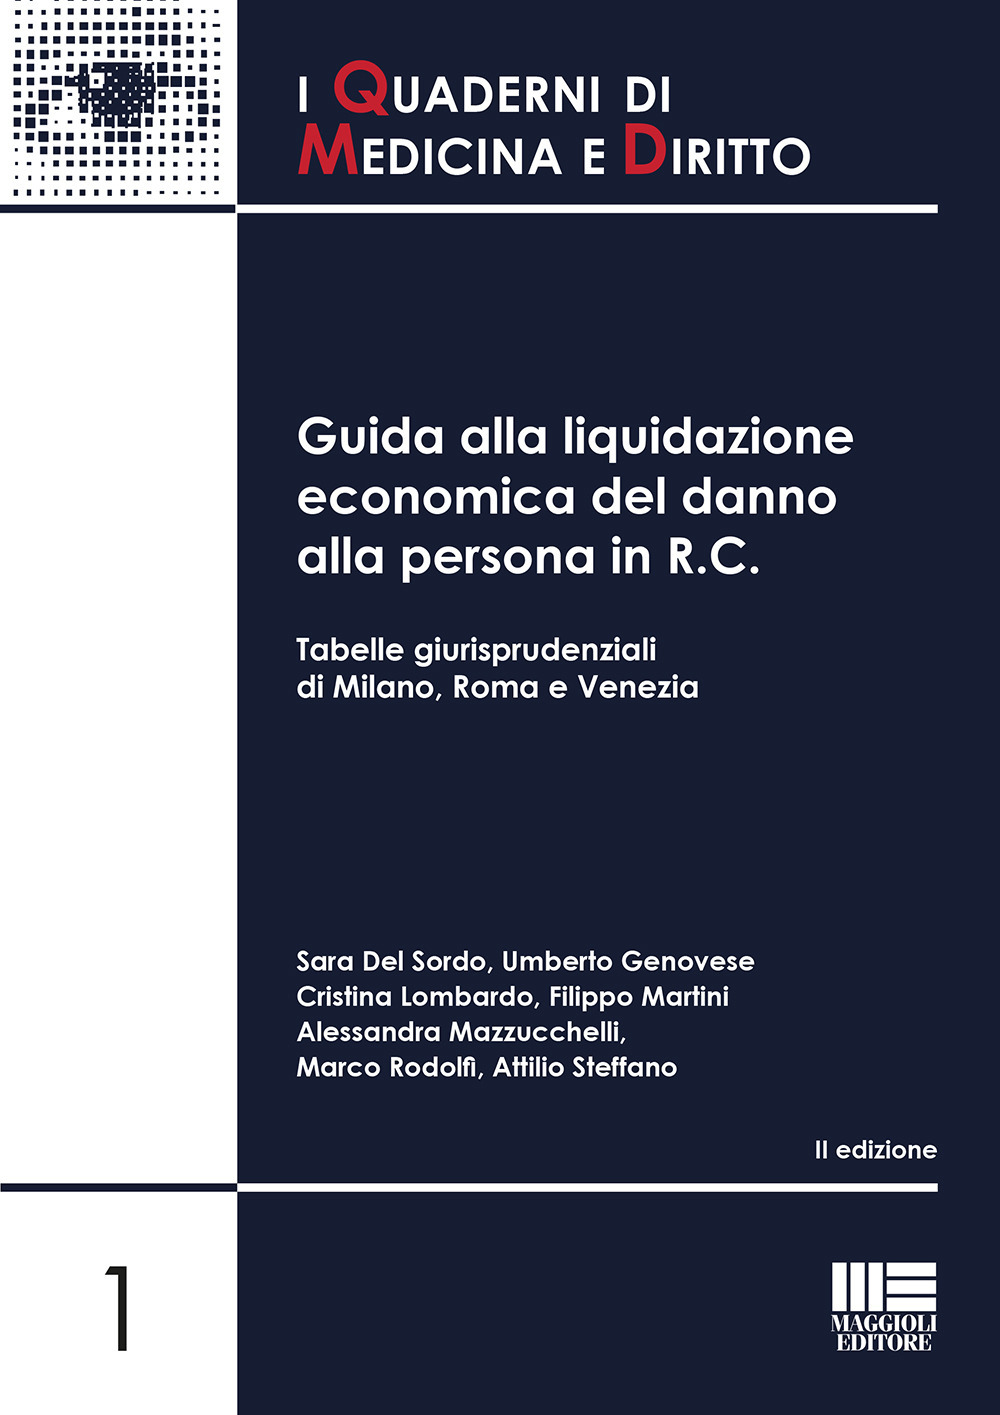 Image of Guida alla liquidazione economica del danno alla persona in R.C. Tabelle giurisprudenziali di Milano, Roma e Venezia